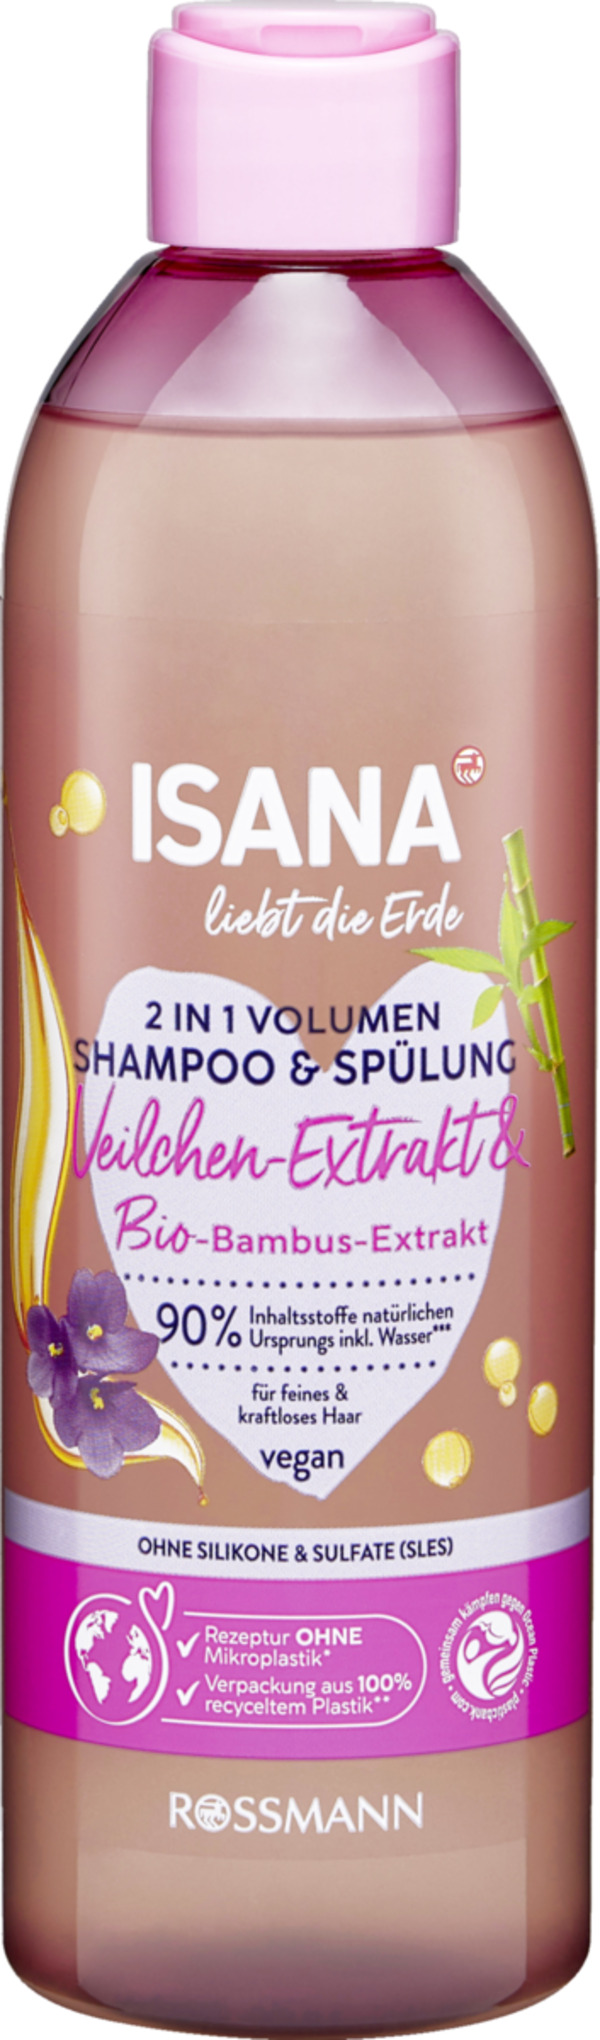 Bild 1 von ISANA 2in1 Volumen Shampoo & Spülung